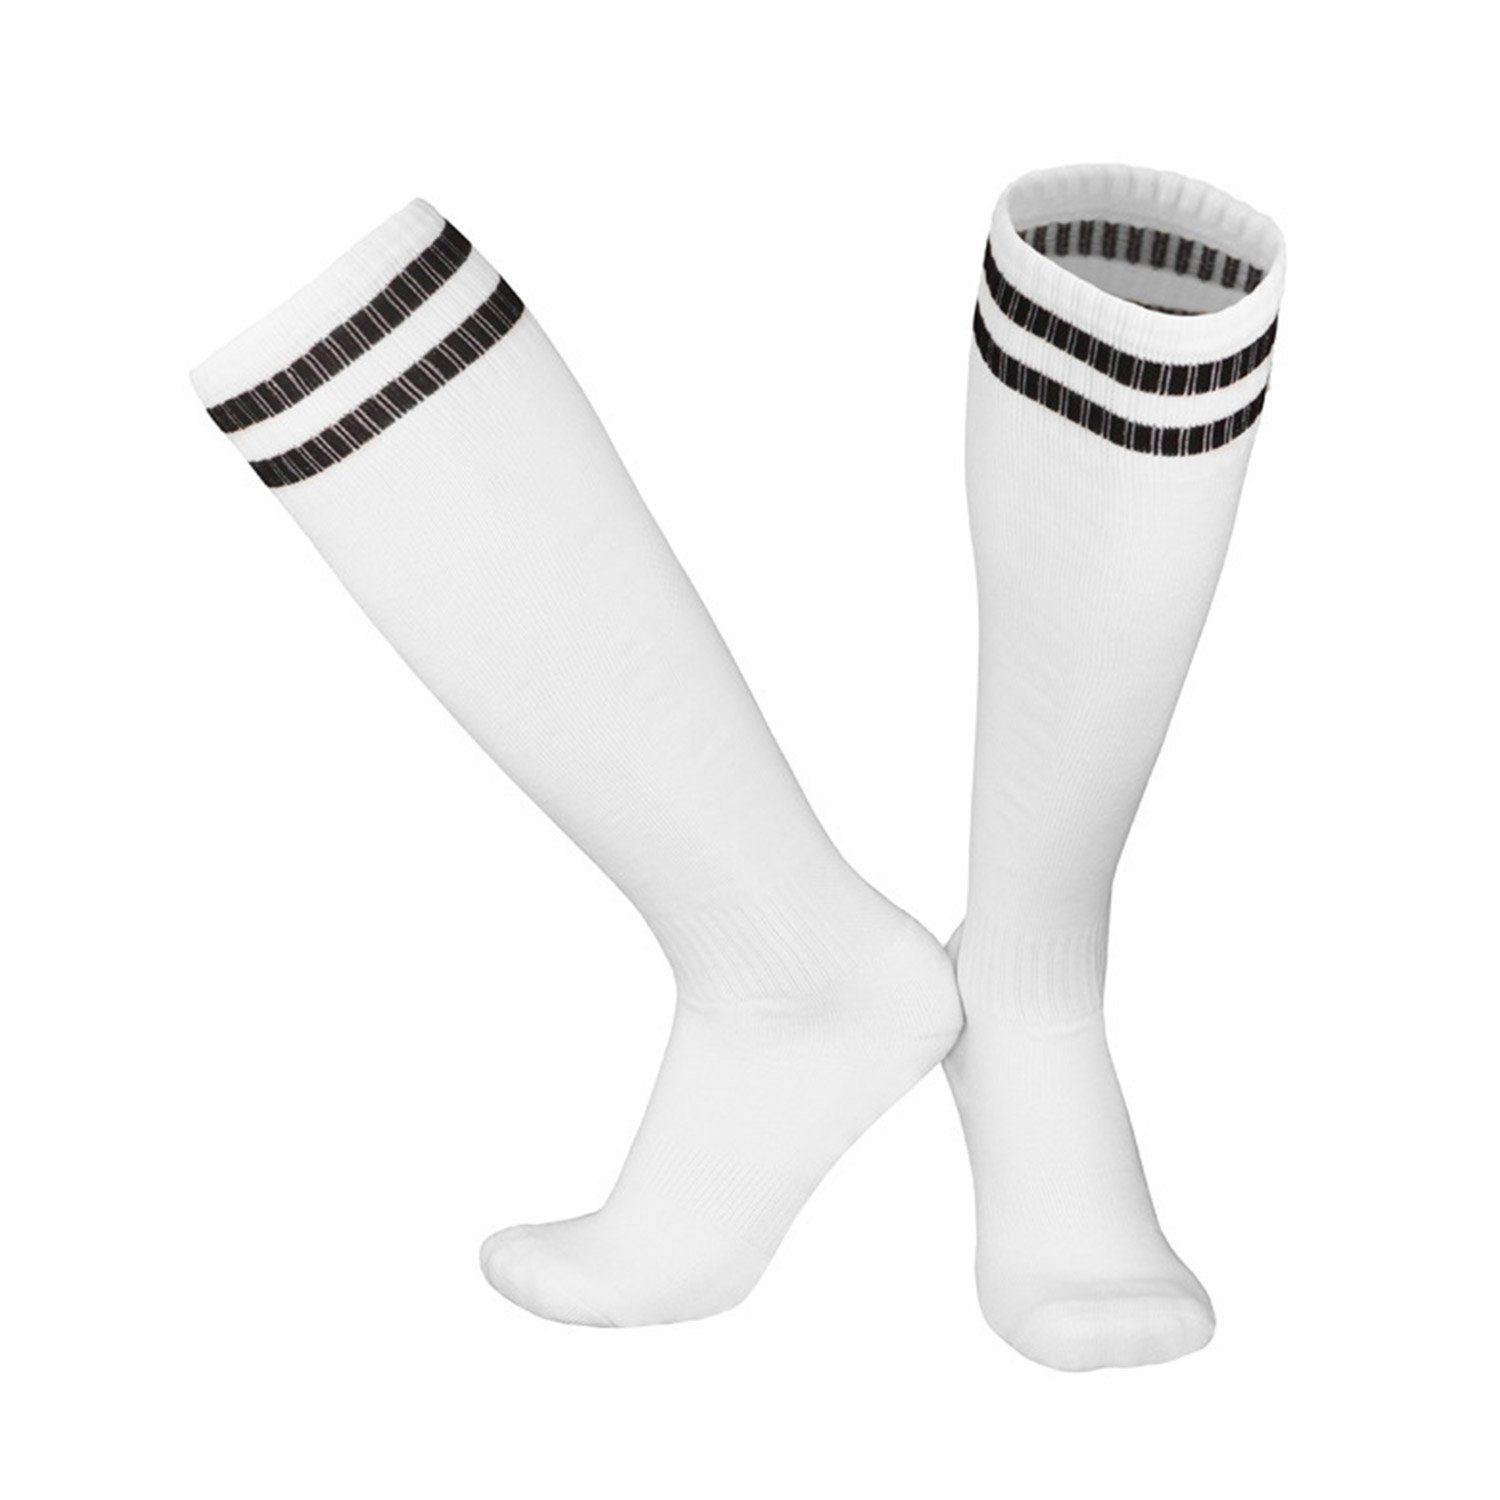 MAGICSHE Sportsocken Bewegung und für Laufen Erwachsene Kinderfußball Neutral Socken Fußballtraining, Training -Socken Fadenfäden Socken Weiß1